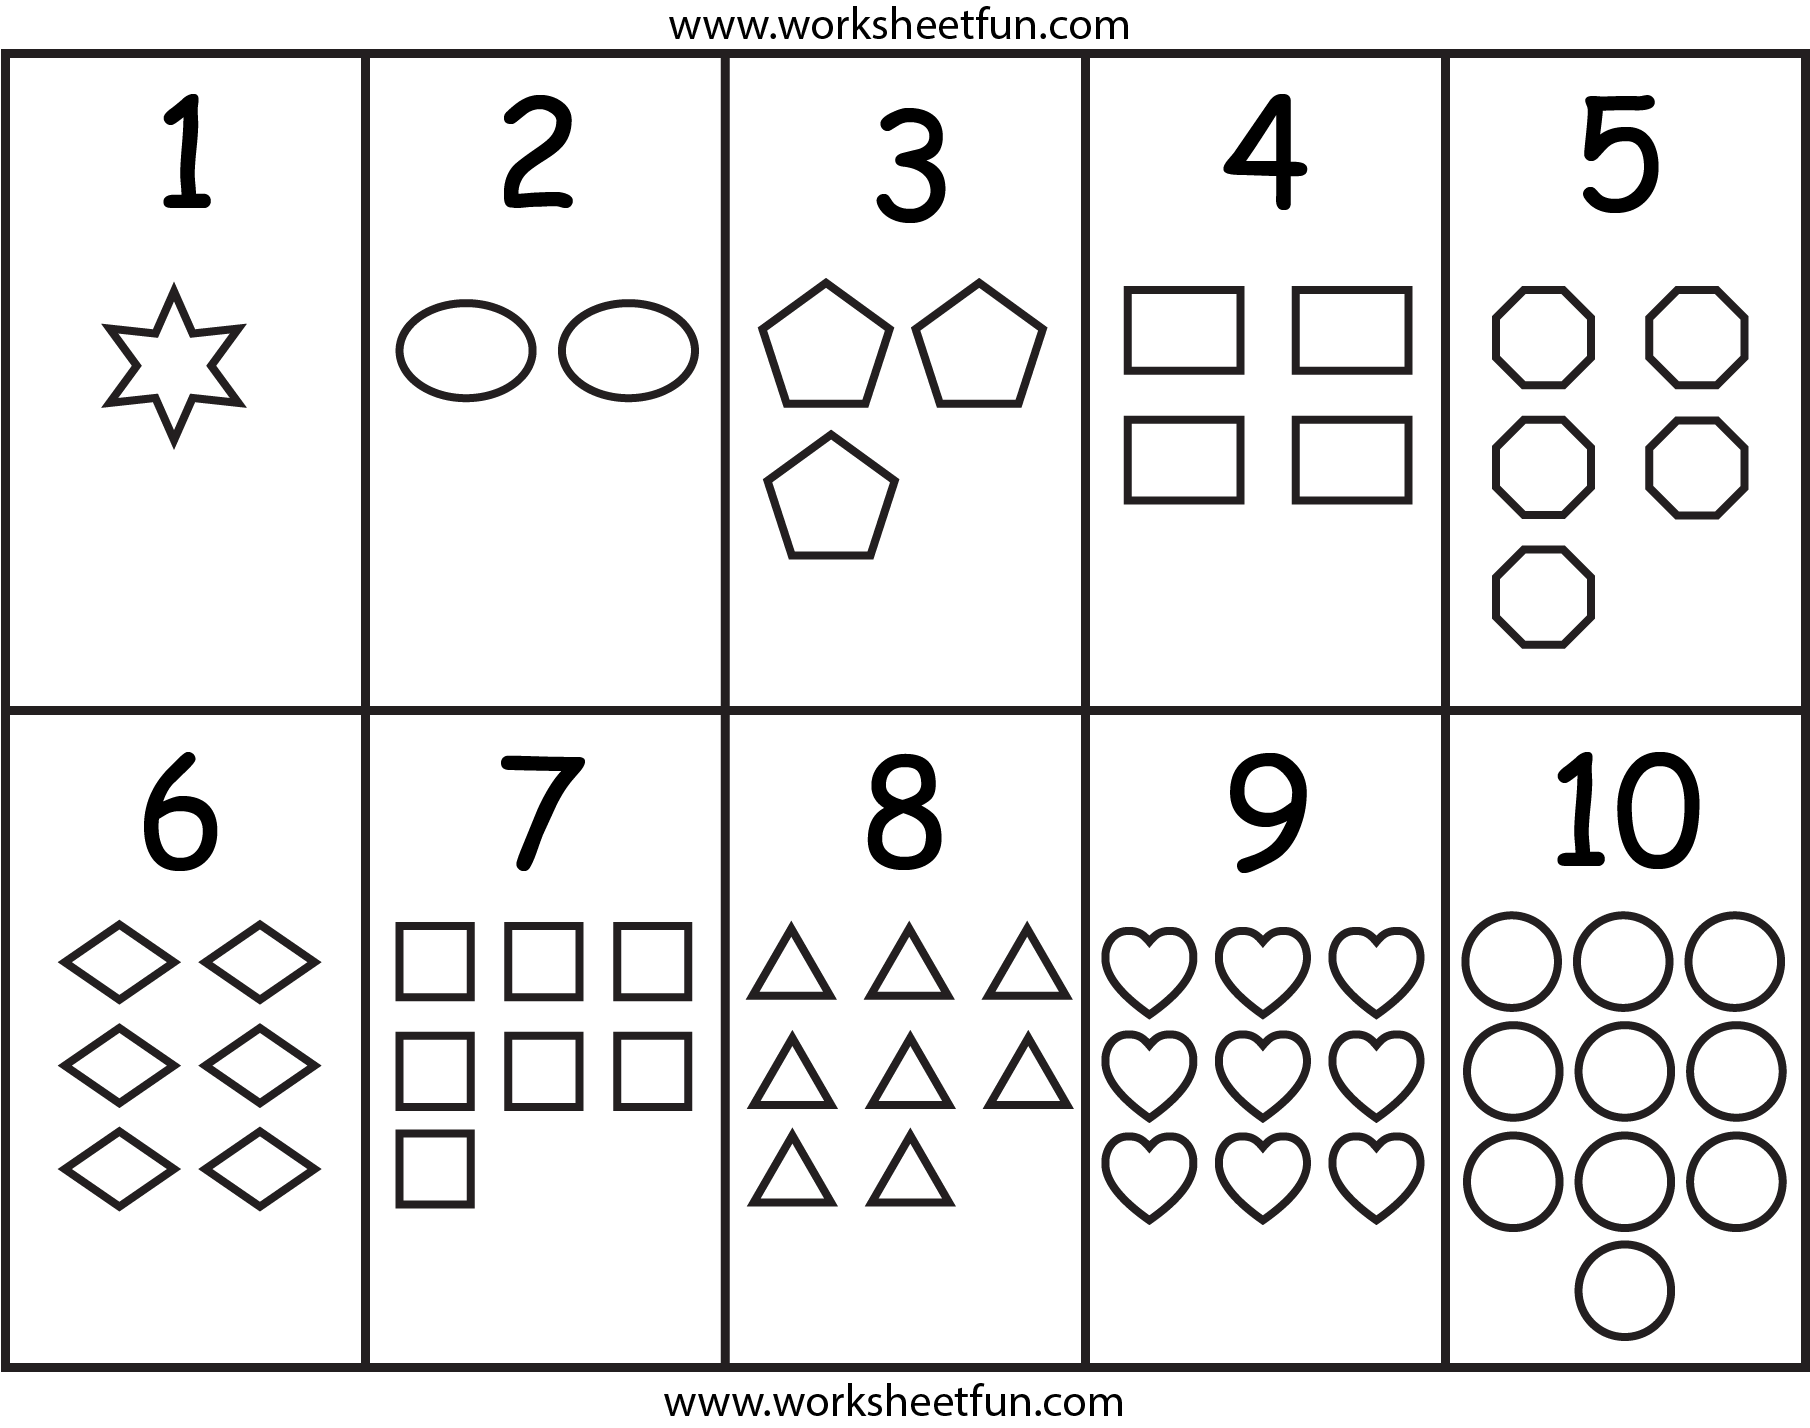 numbers-shapes-free-printable-worksheets-worksheetfun